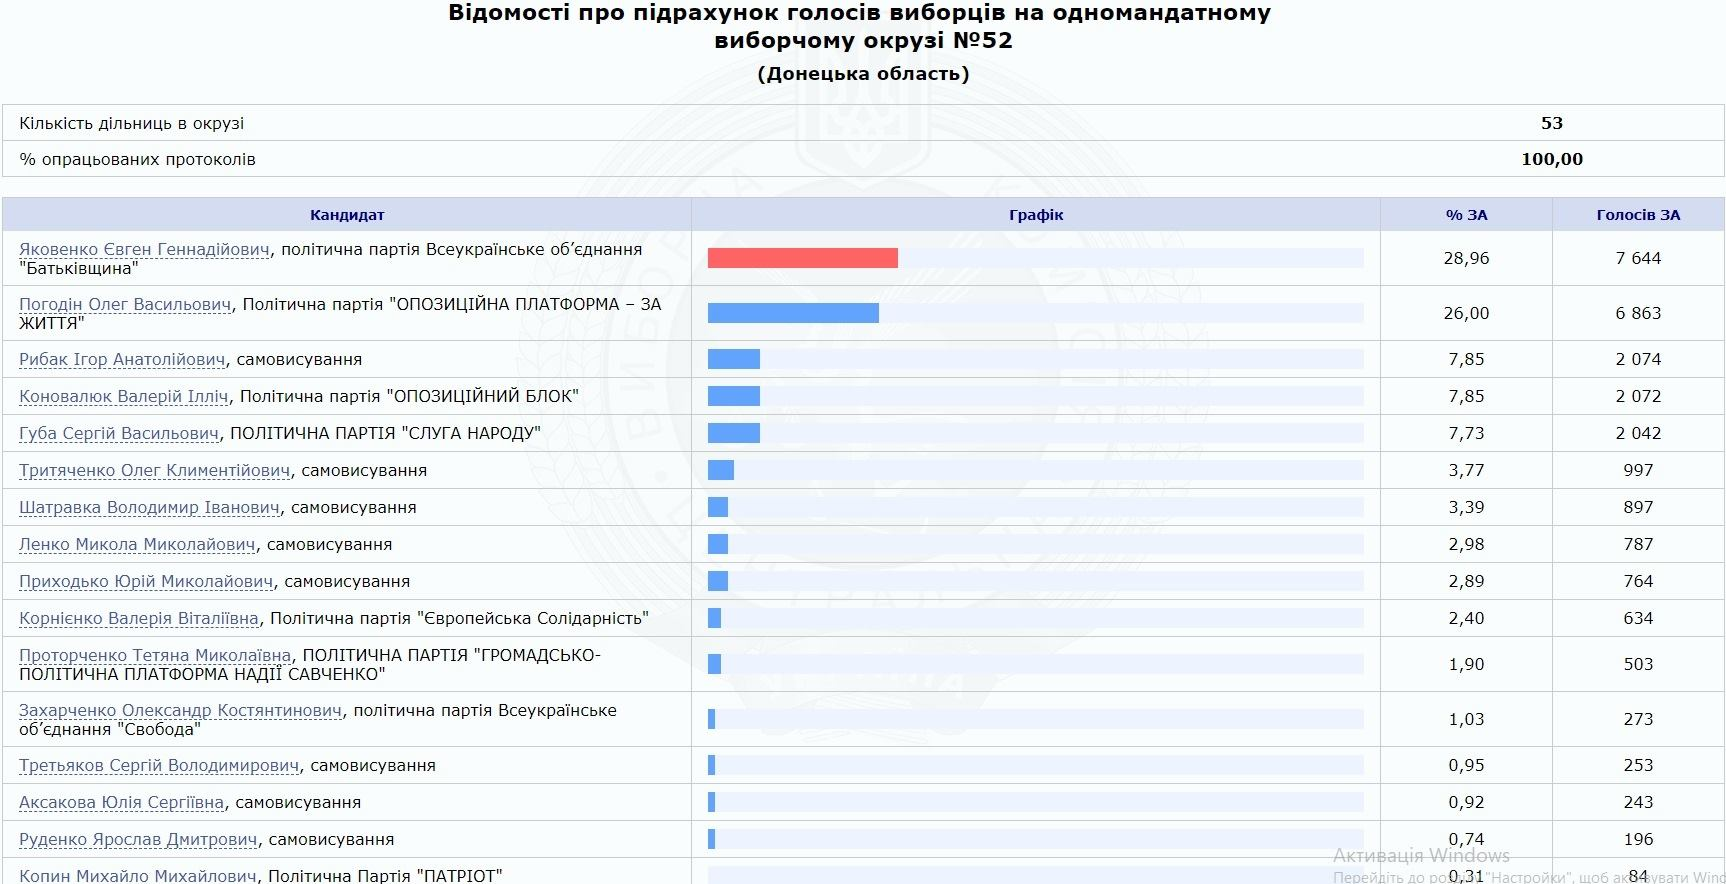 Євген Яковенко заручився підтримкою 7644 виборців, що на 781 голос більше, ніж його головний опонент Олег Погодін